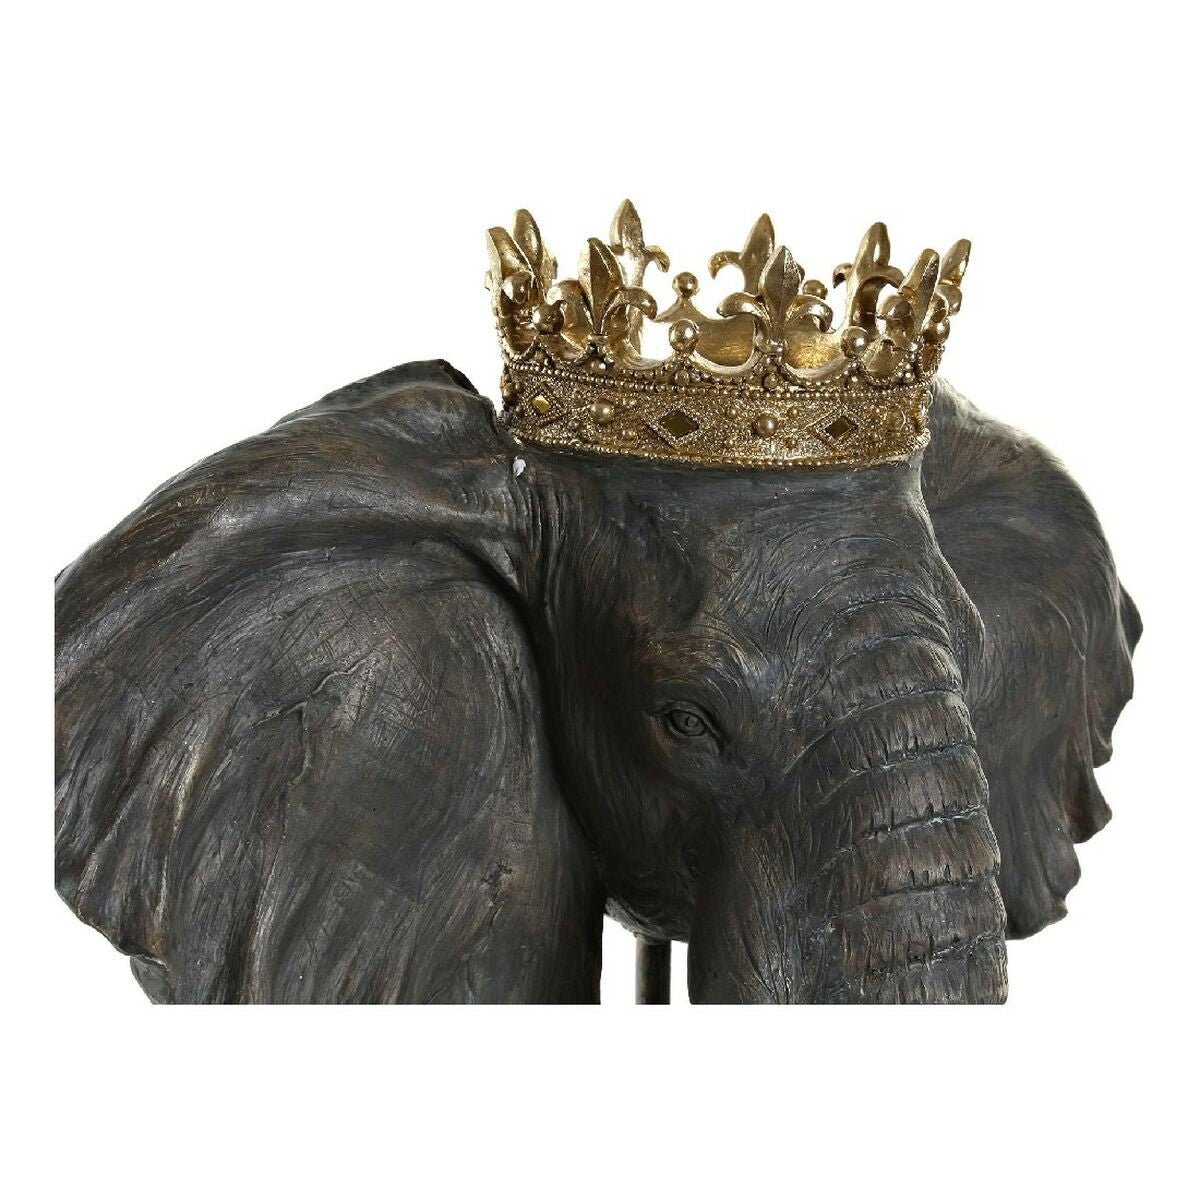 Juodasis dramblys karalius 49 x 26,5 x 57 cm)